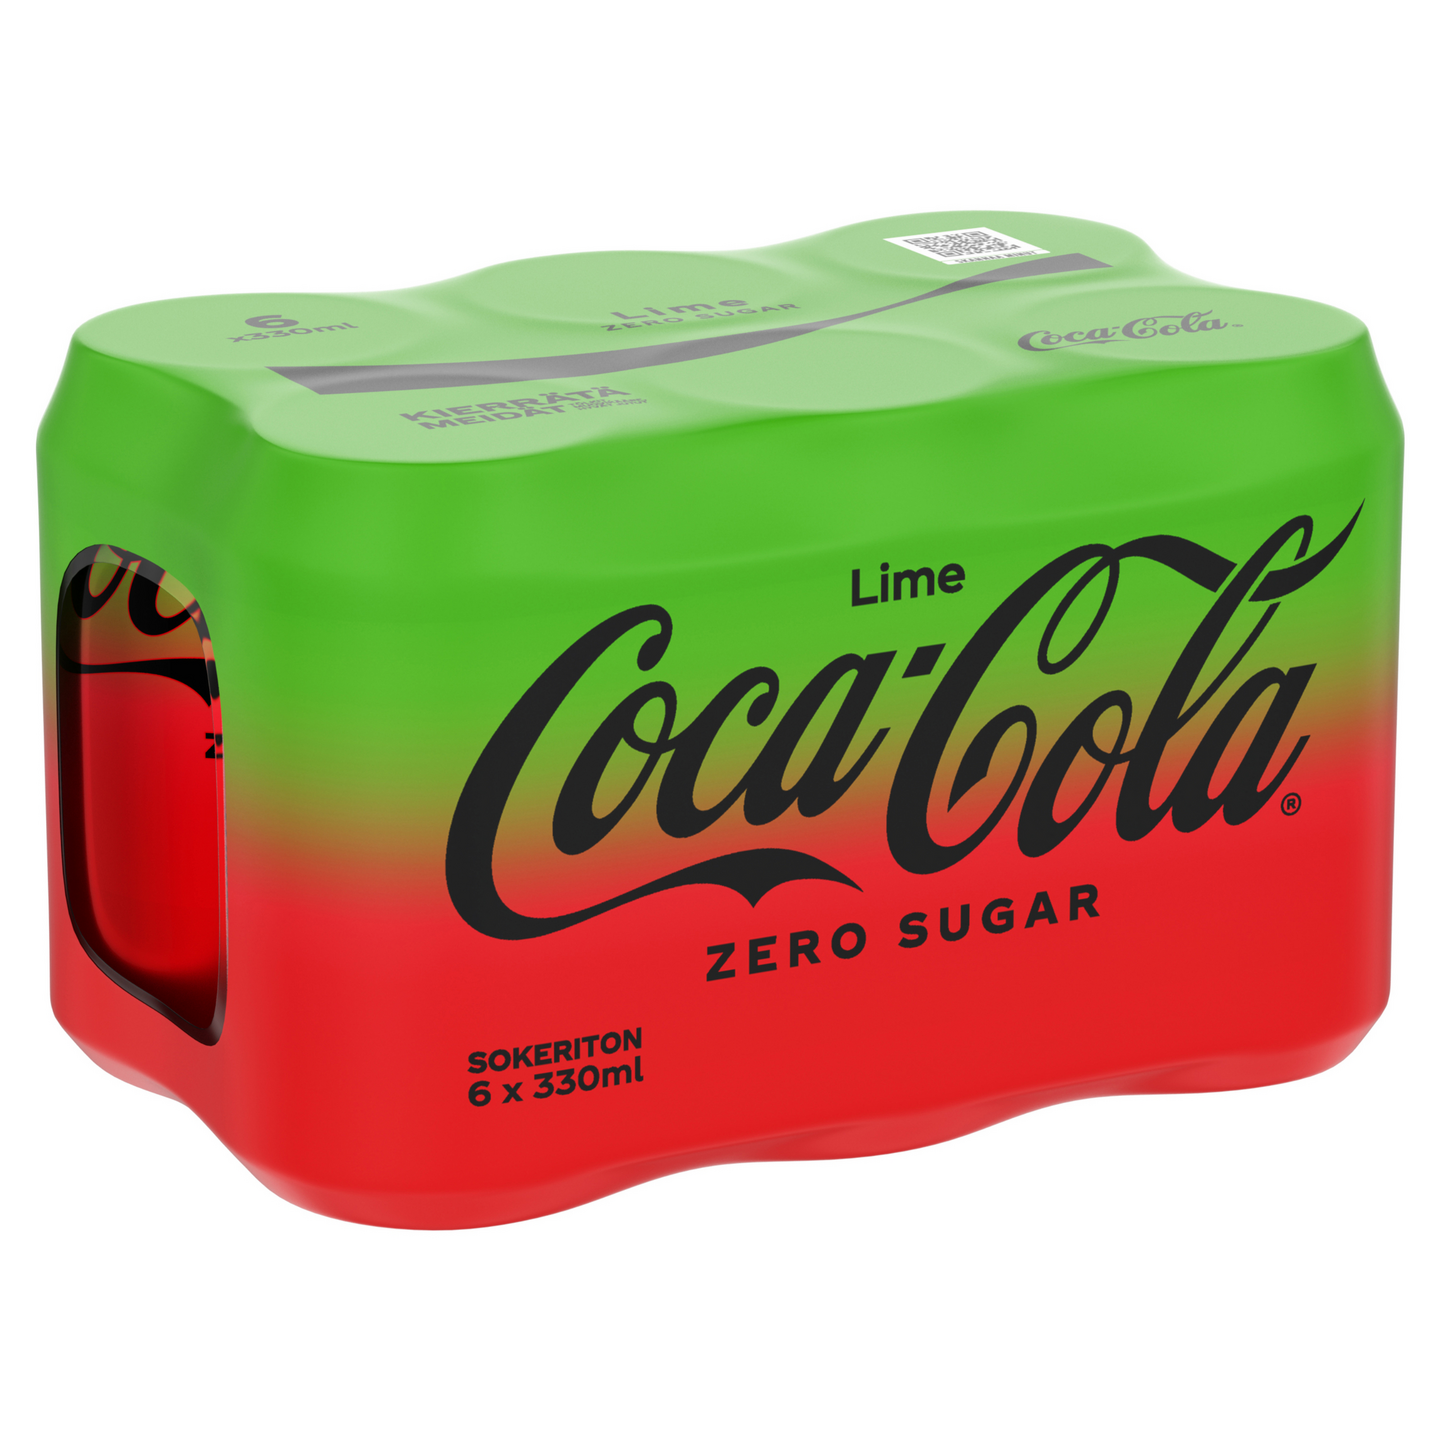 Coca-Cola Zero Sugar Lime virvoitusjuoma 0,33l 6-pack